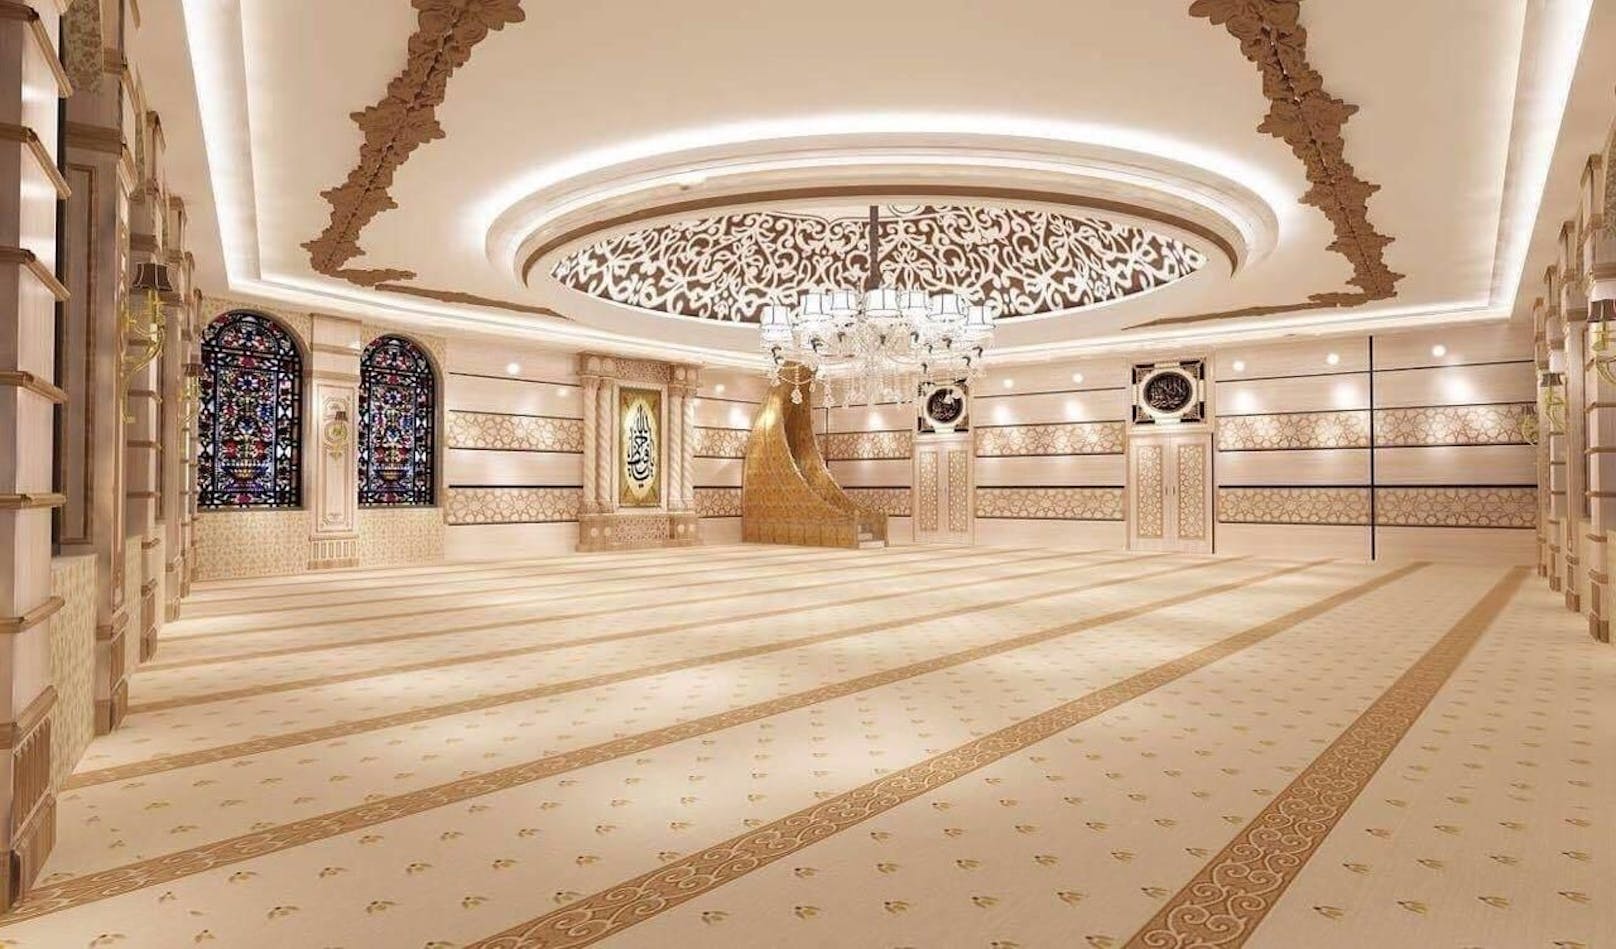 Beim Bau der Aksa-Moschee in Schaffhausen habe die türkische Religionsbehörde Diyanet ihre Finger im Spiel, behaupten Kritiker.